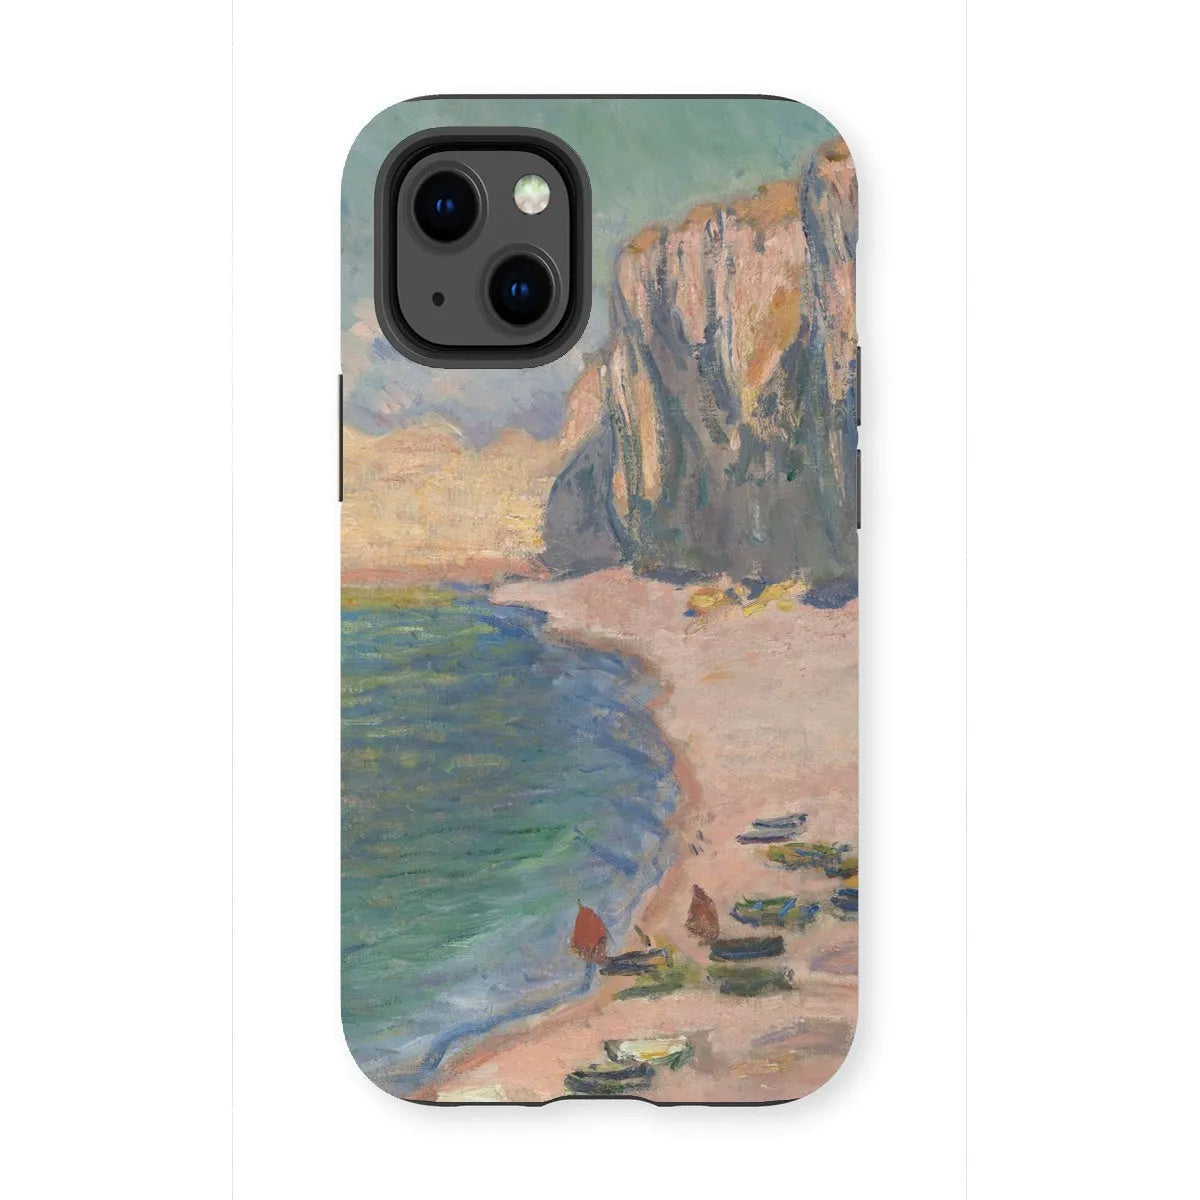 étretat - Impressionist Art Phone Case - Claude Monet - Iphone 13 Mini / Matte - Mobile Phone Cases - Aesthetic Art